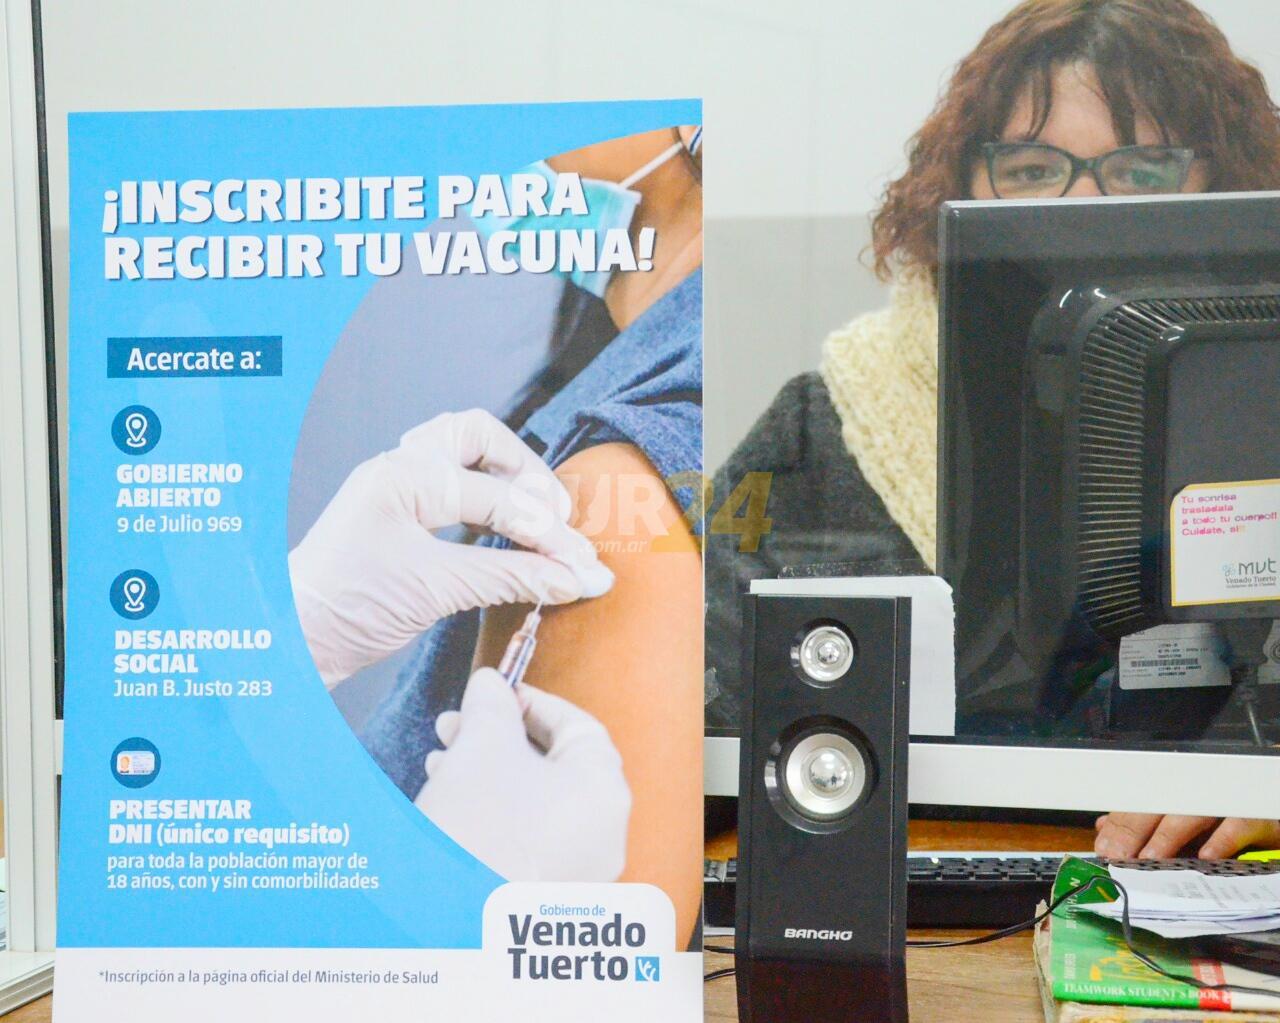 El Gobierno de Venado Tuerto ayuda a la población a anotarse para recibir la vacuna contra el Covid